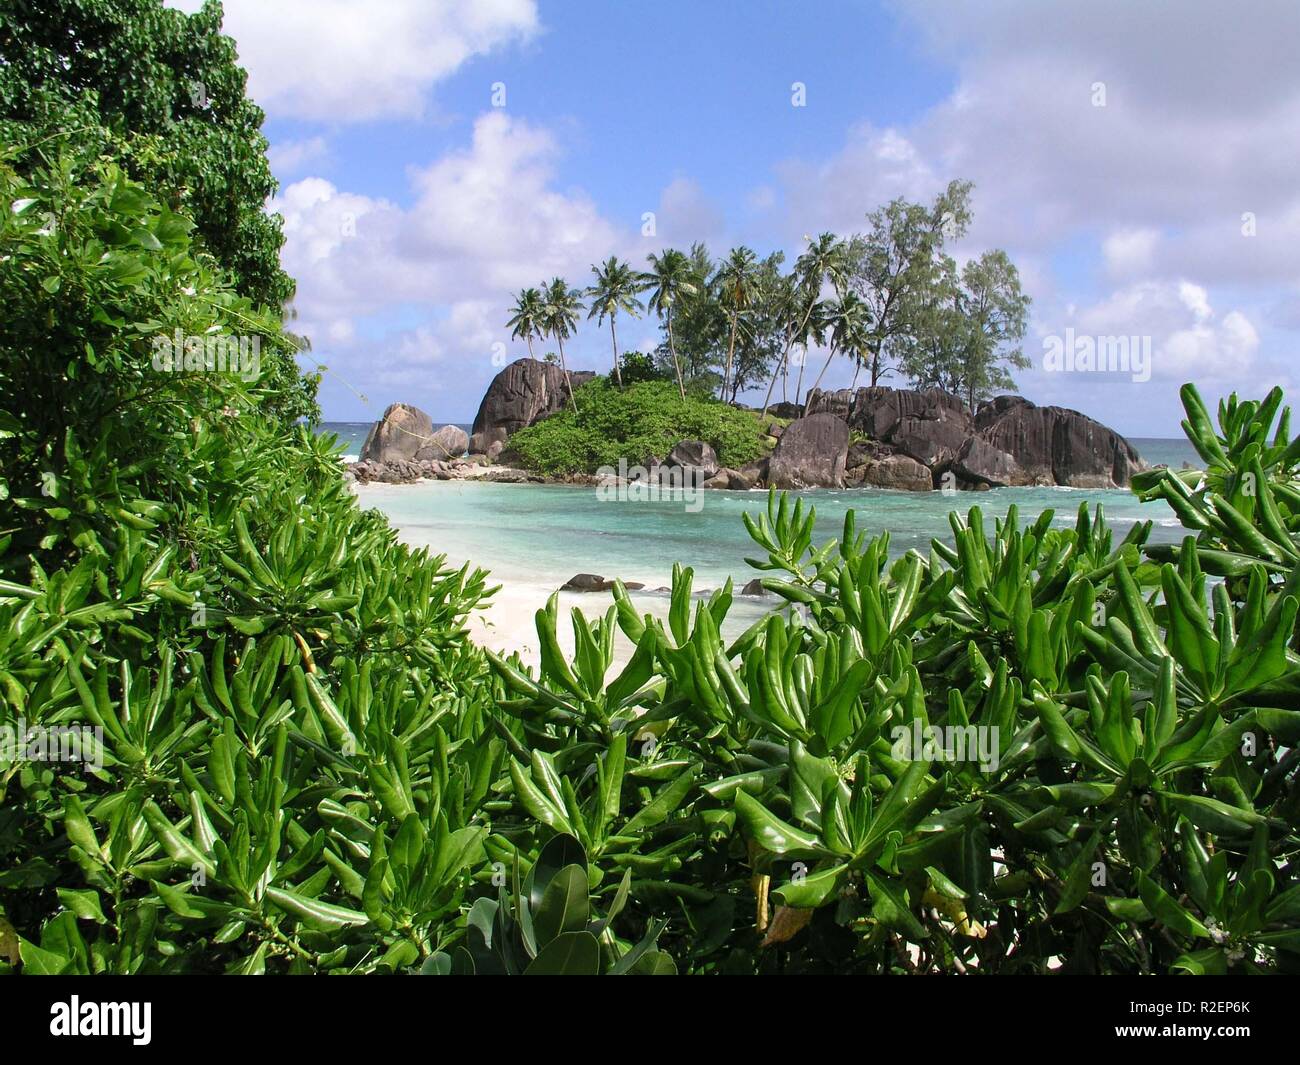 island paradise Stock Photo